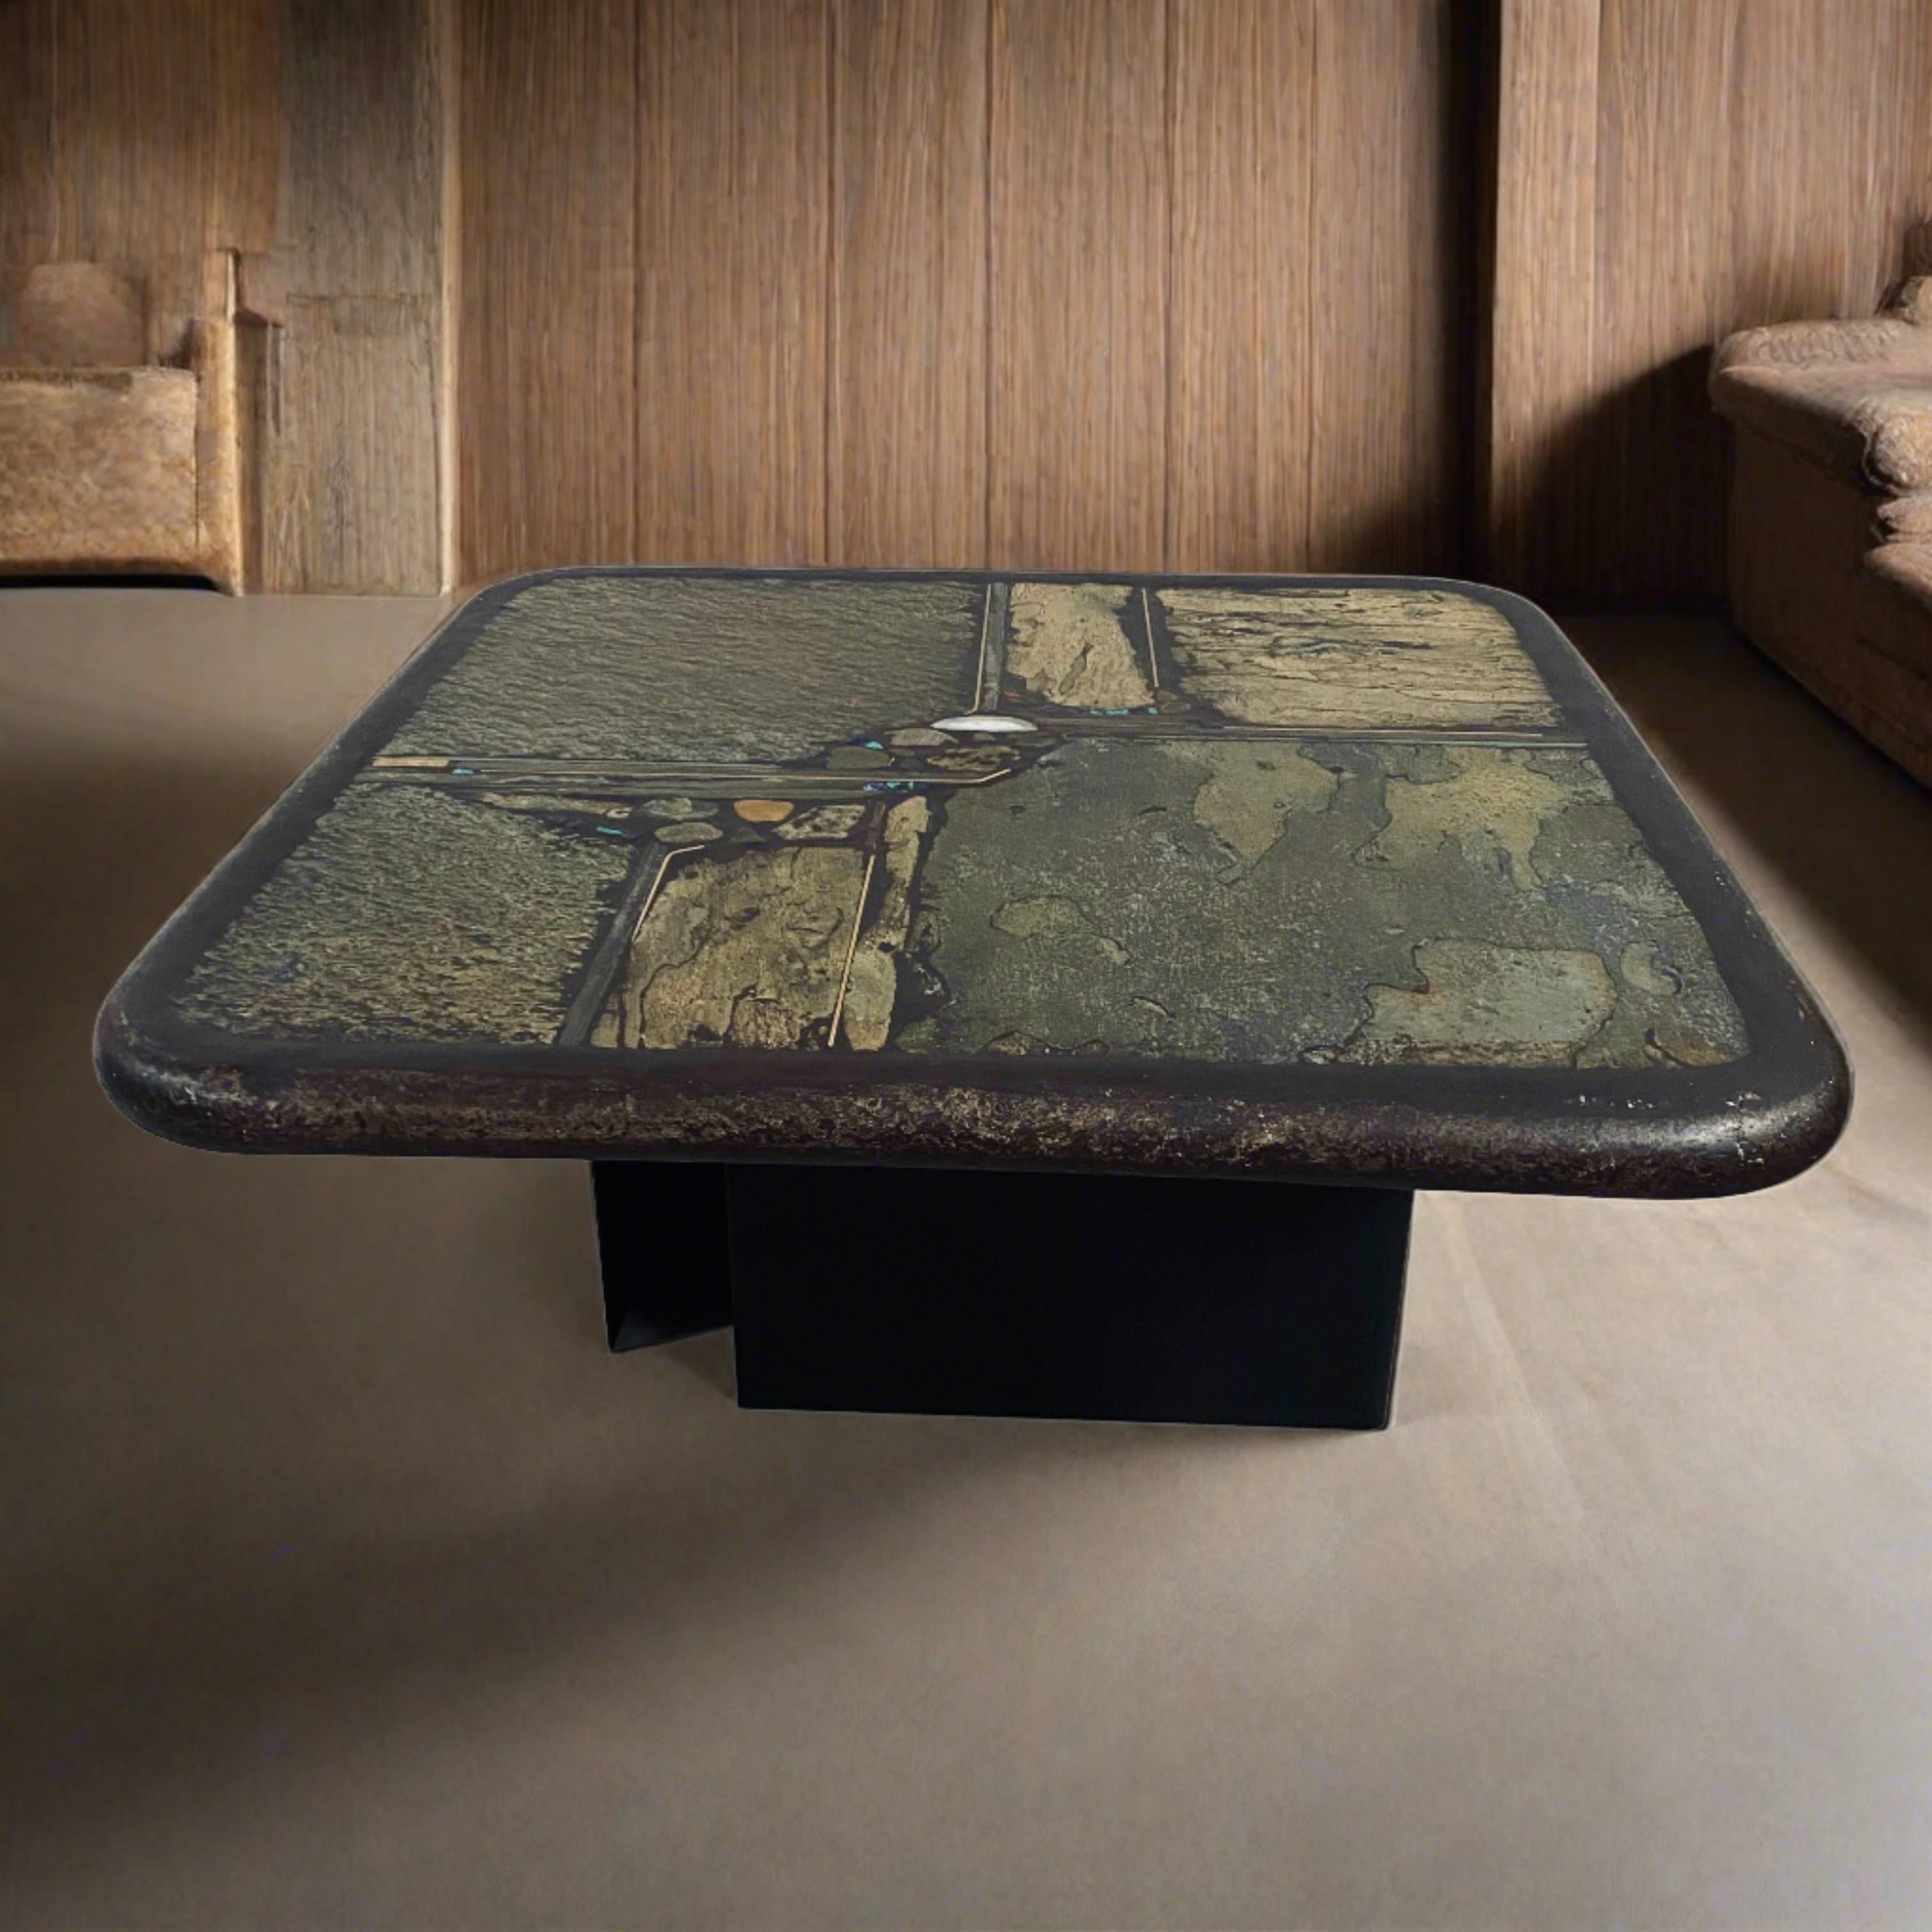 Table basse brutaliste conçue et fabriquée par Paul Kingma, Pays-Bas 1991.

Voici la table basse ronde brutaliste du célèbre sculpteur Paul Kingma, fabriquée aux Pays-Bas en 1991. Cette pièce emblématique témoigne de l'esthétique et du savoir-faire